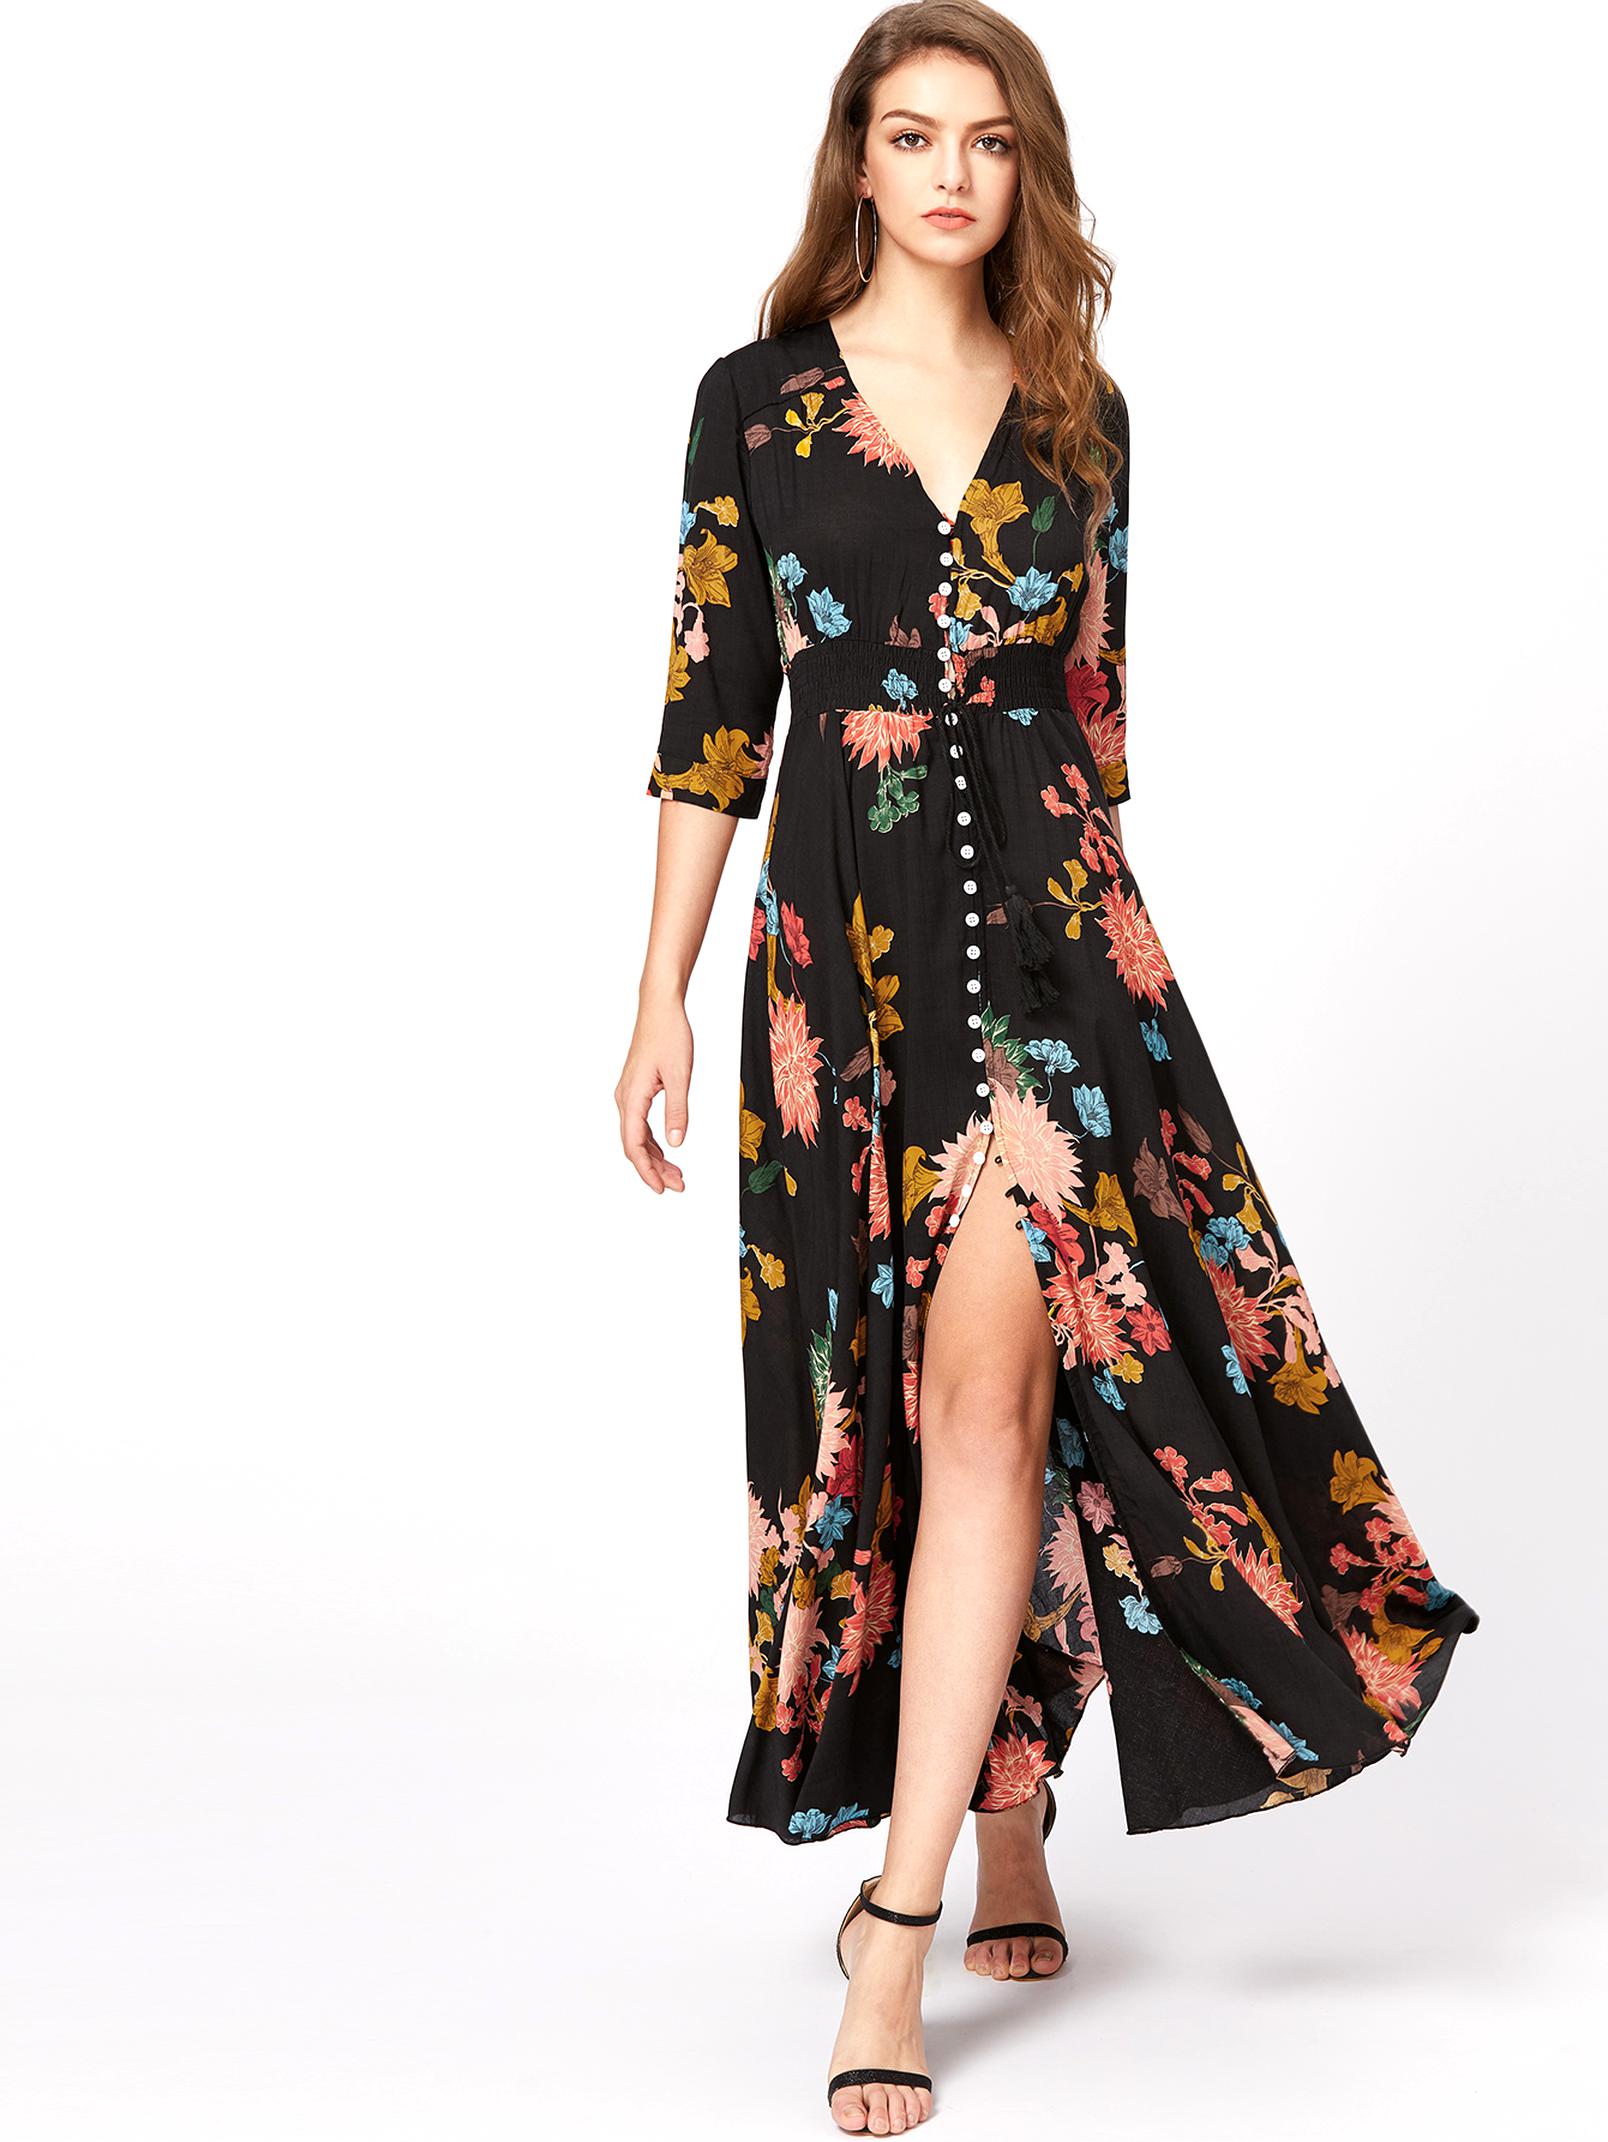 Zara Maxi Dress for sale in UK | 74 